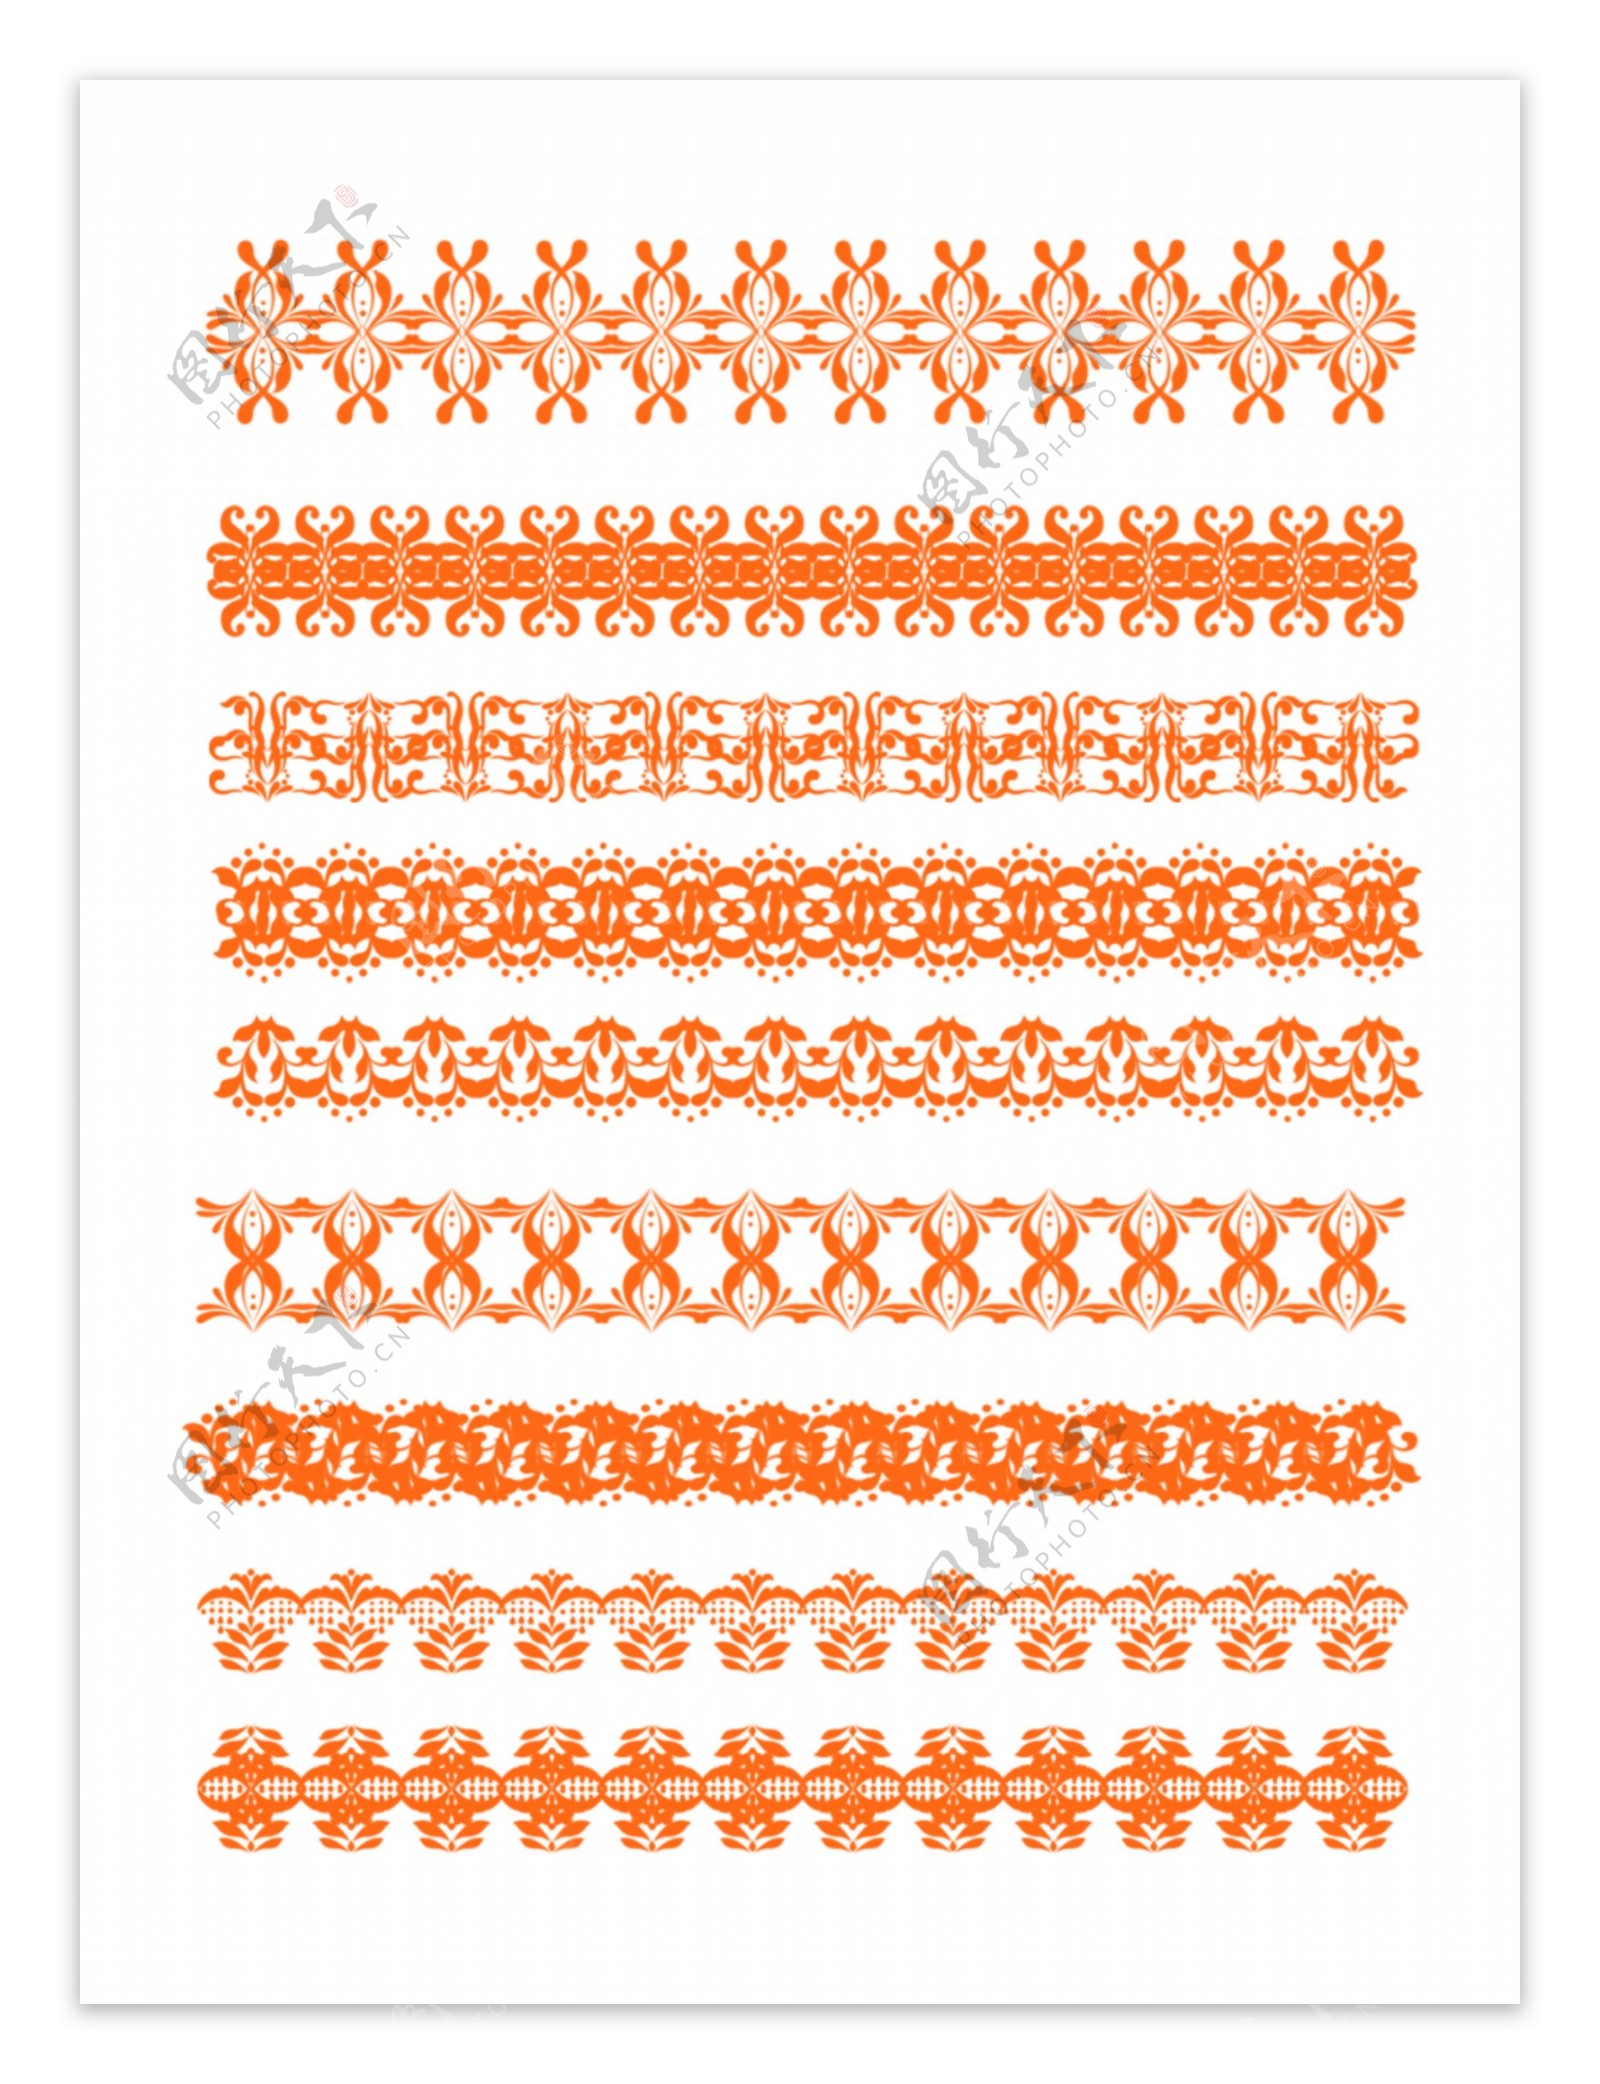 原创欧式复杂严肃边框套图橙色可商用元素